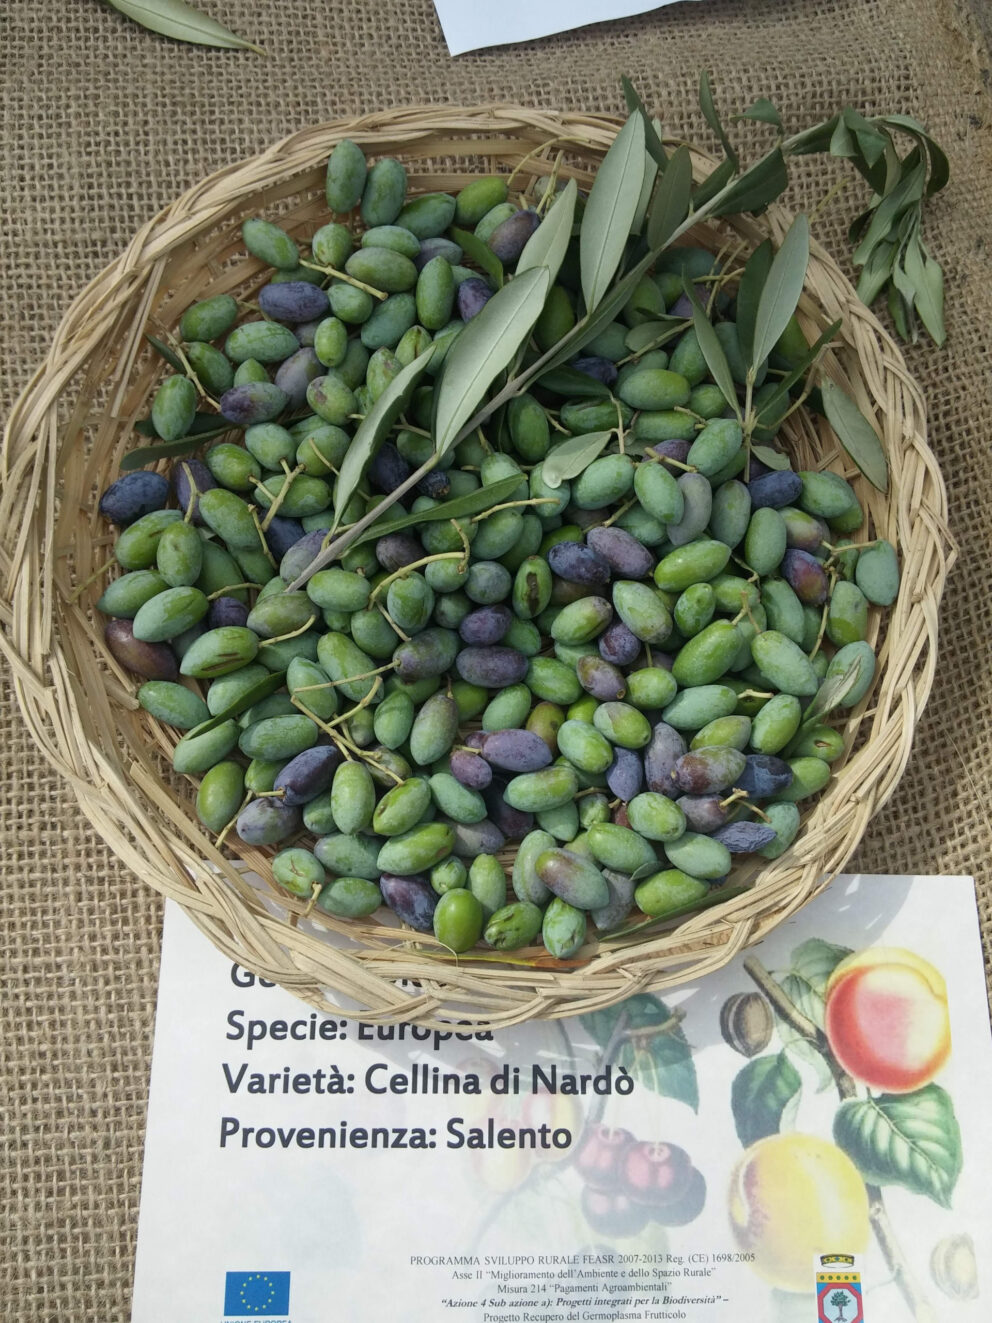 La sfilata delle olive